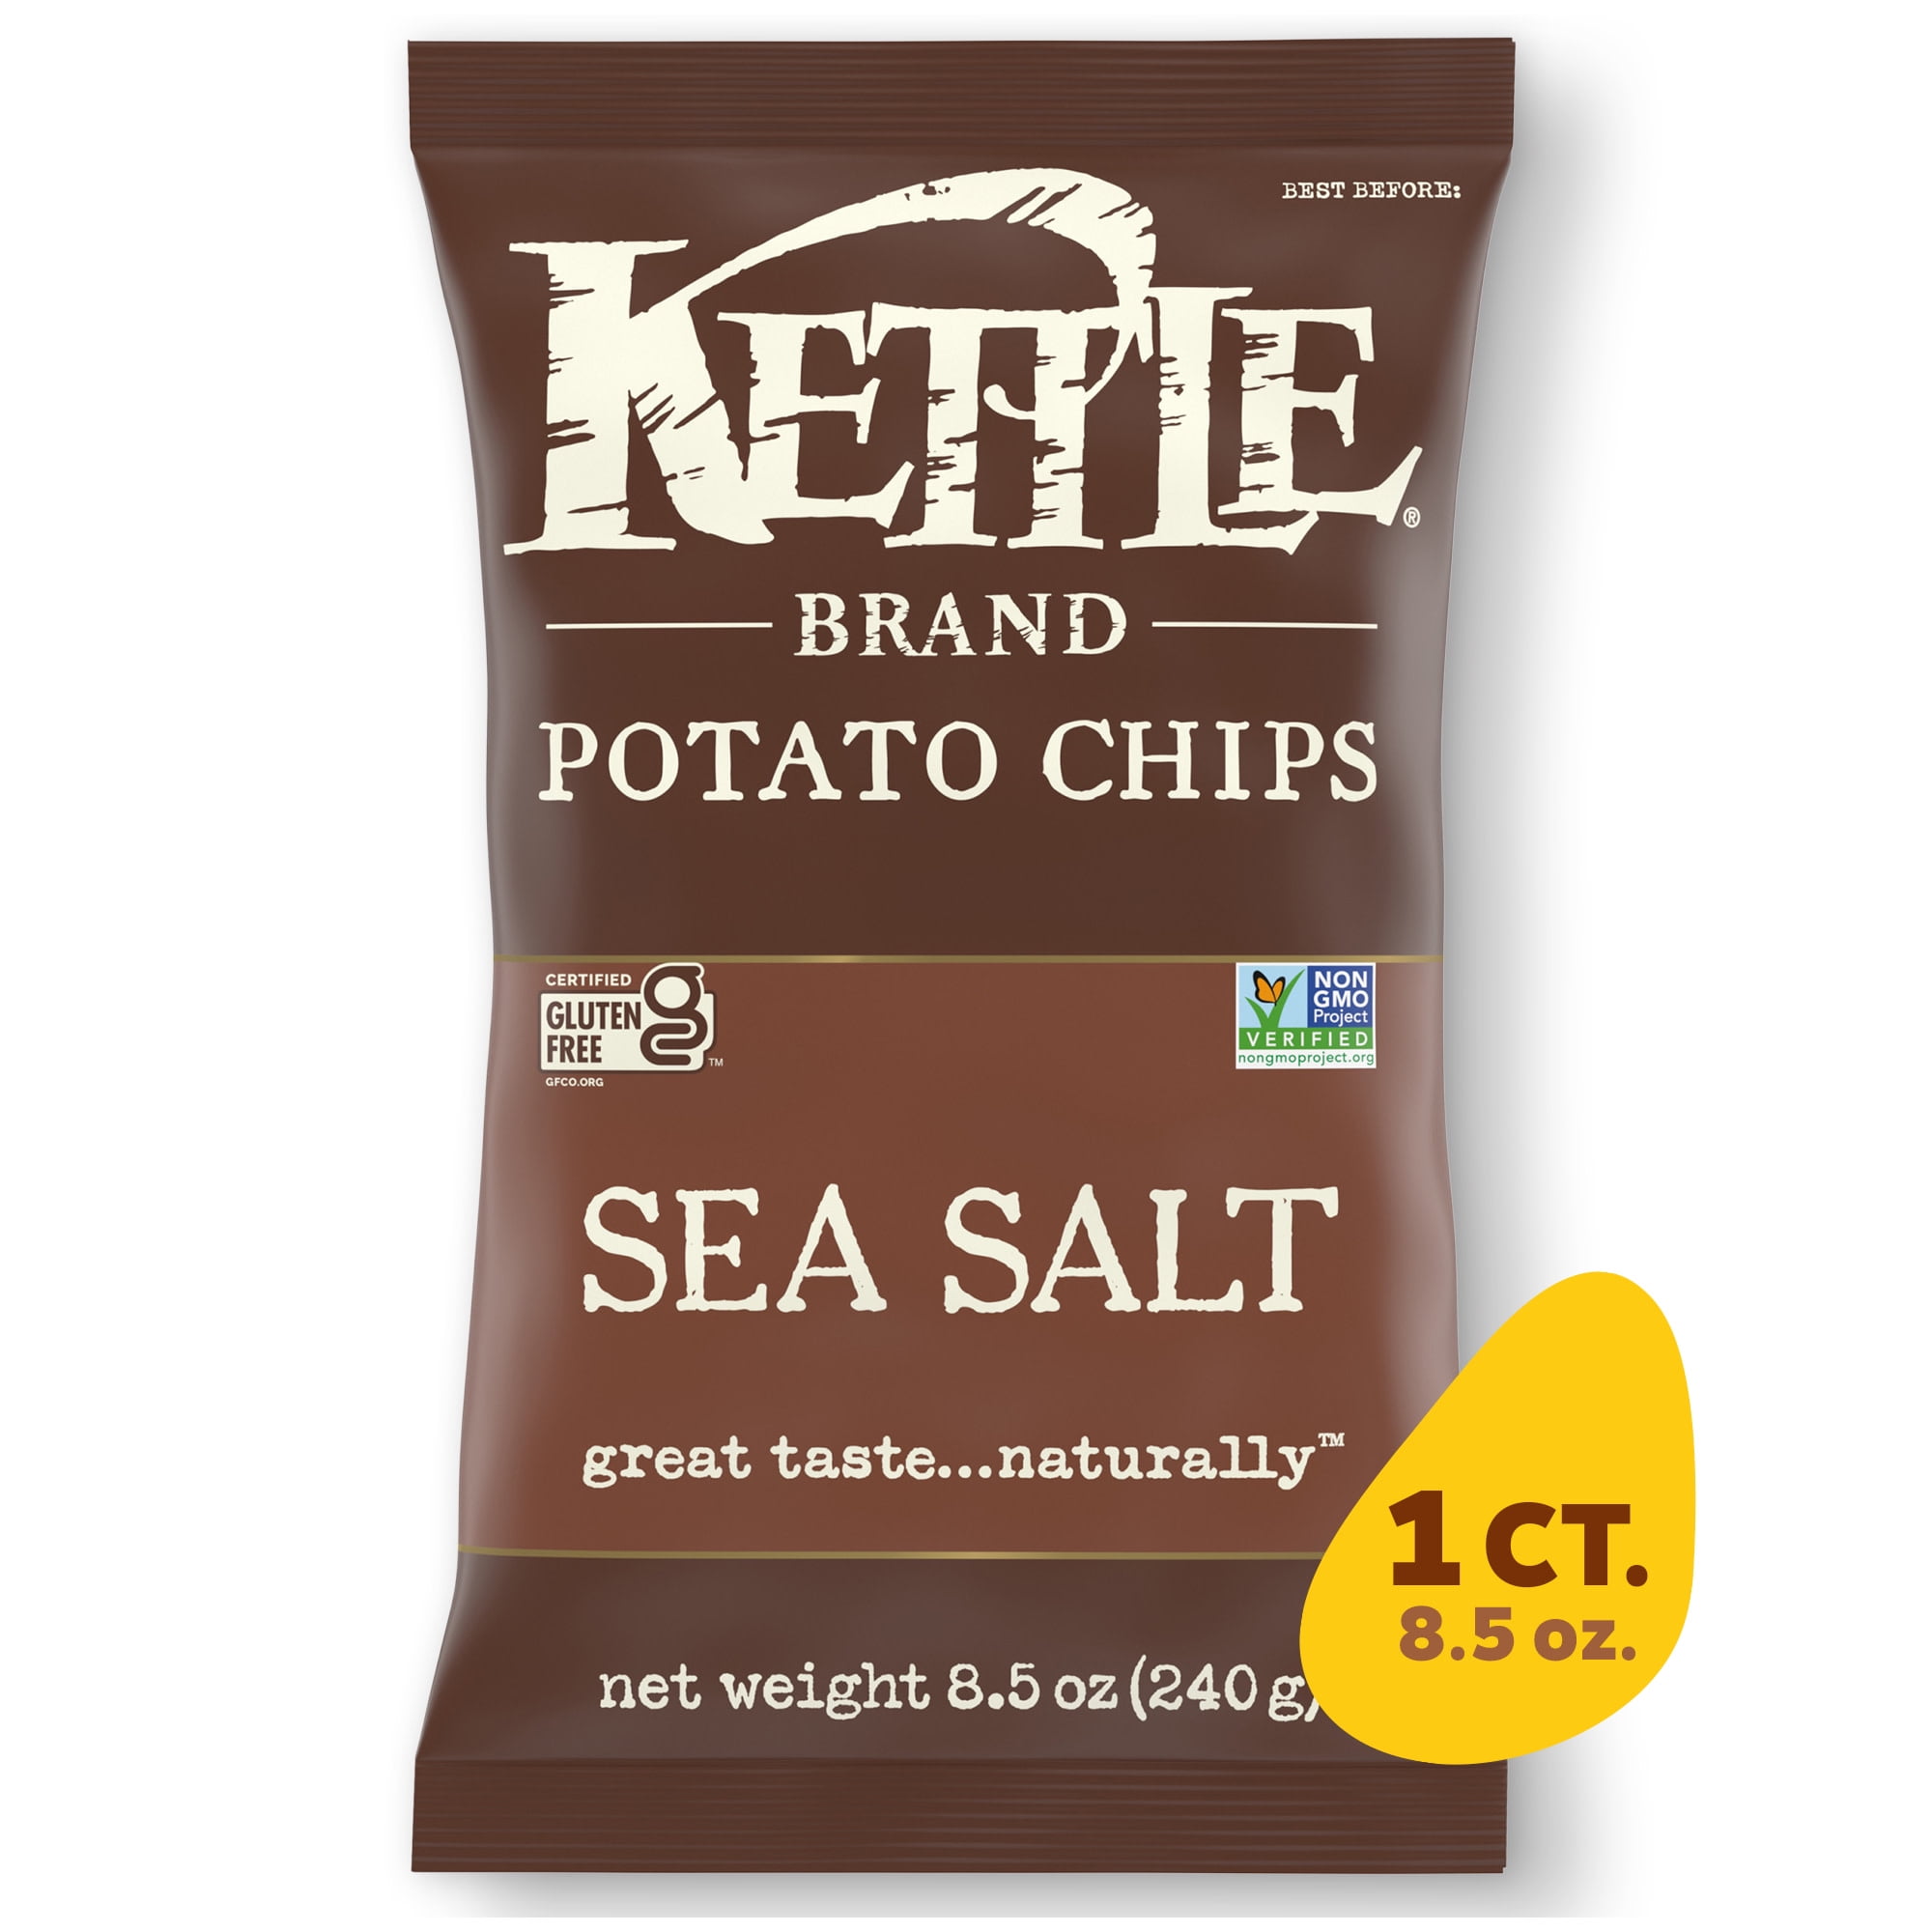 Kettle Brand Potato Chips, Sea Salt Kettle Chips, 8.5 Oz